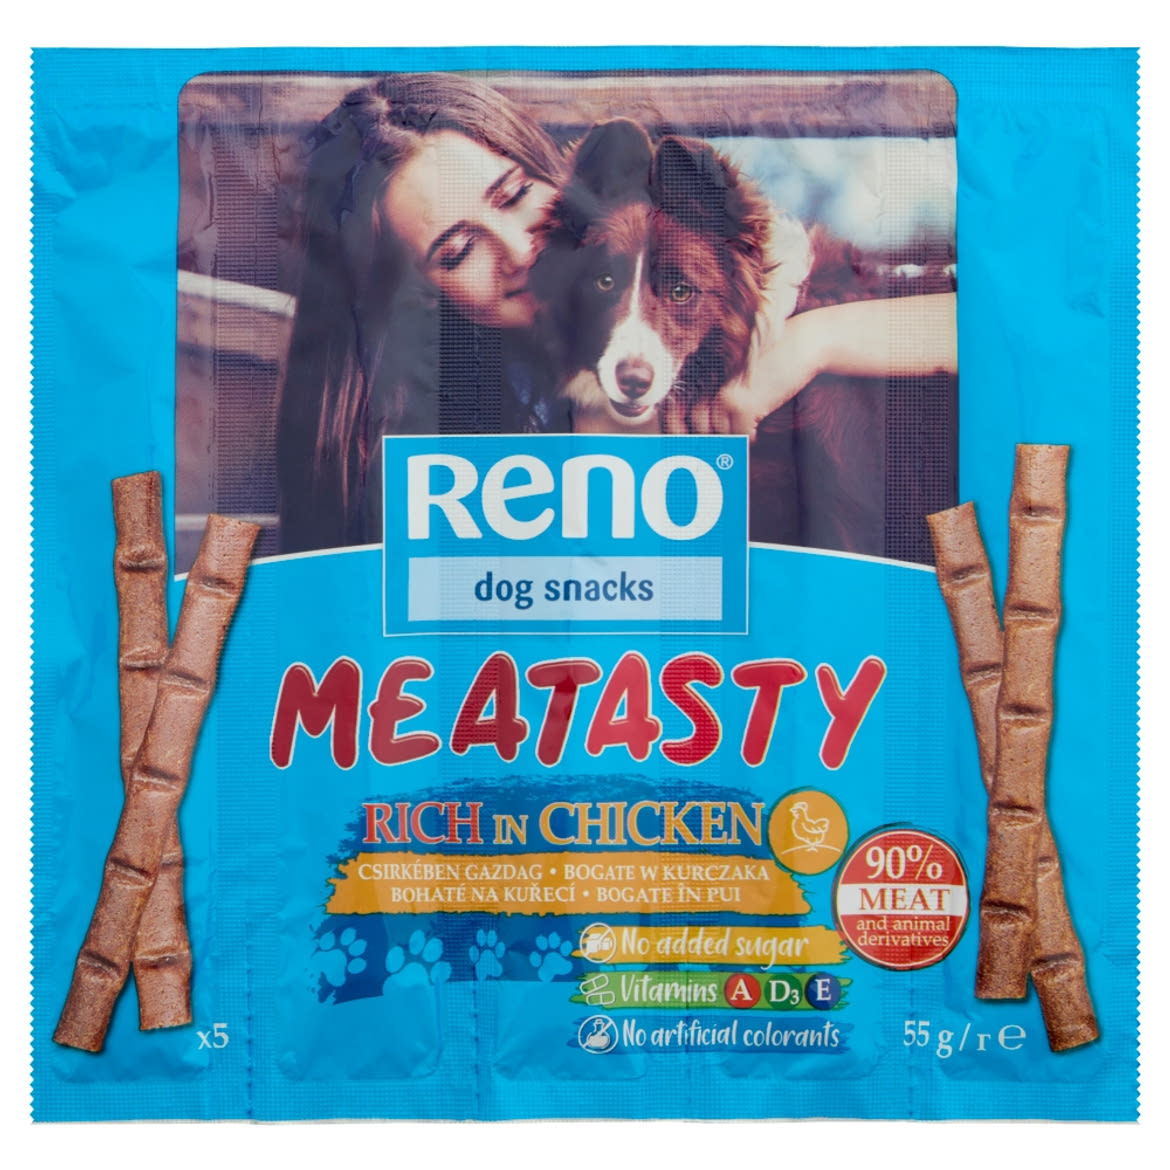 Reno csirkében gazdag kiegészítő állateledel felnőtt kutyák számára 5 x 11 g